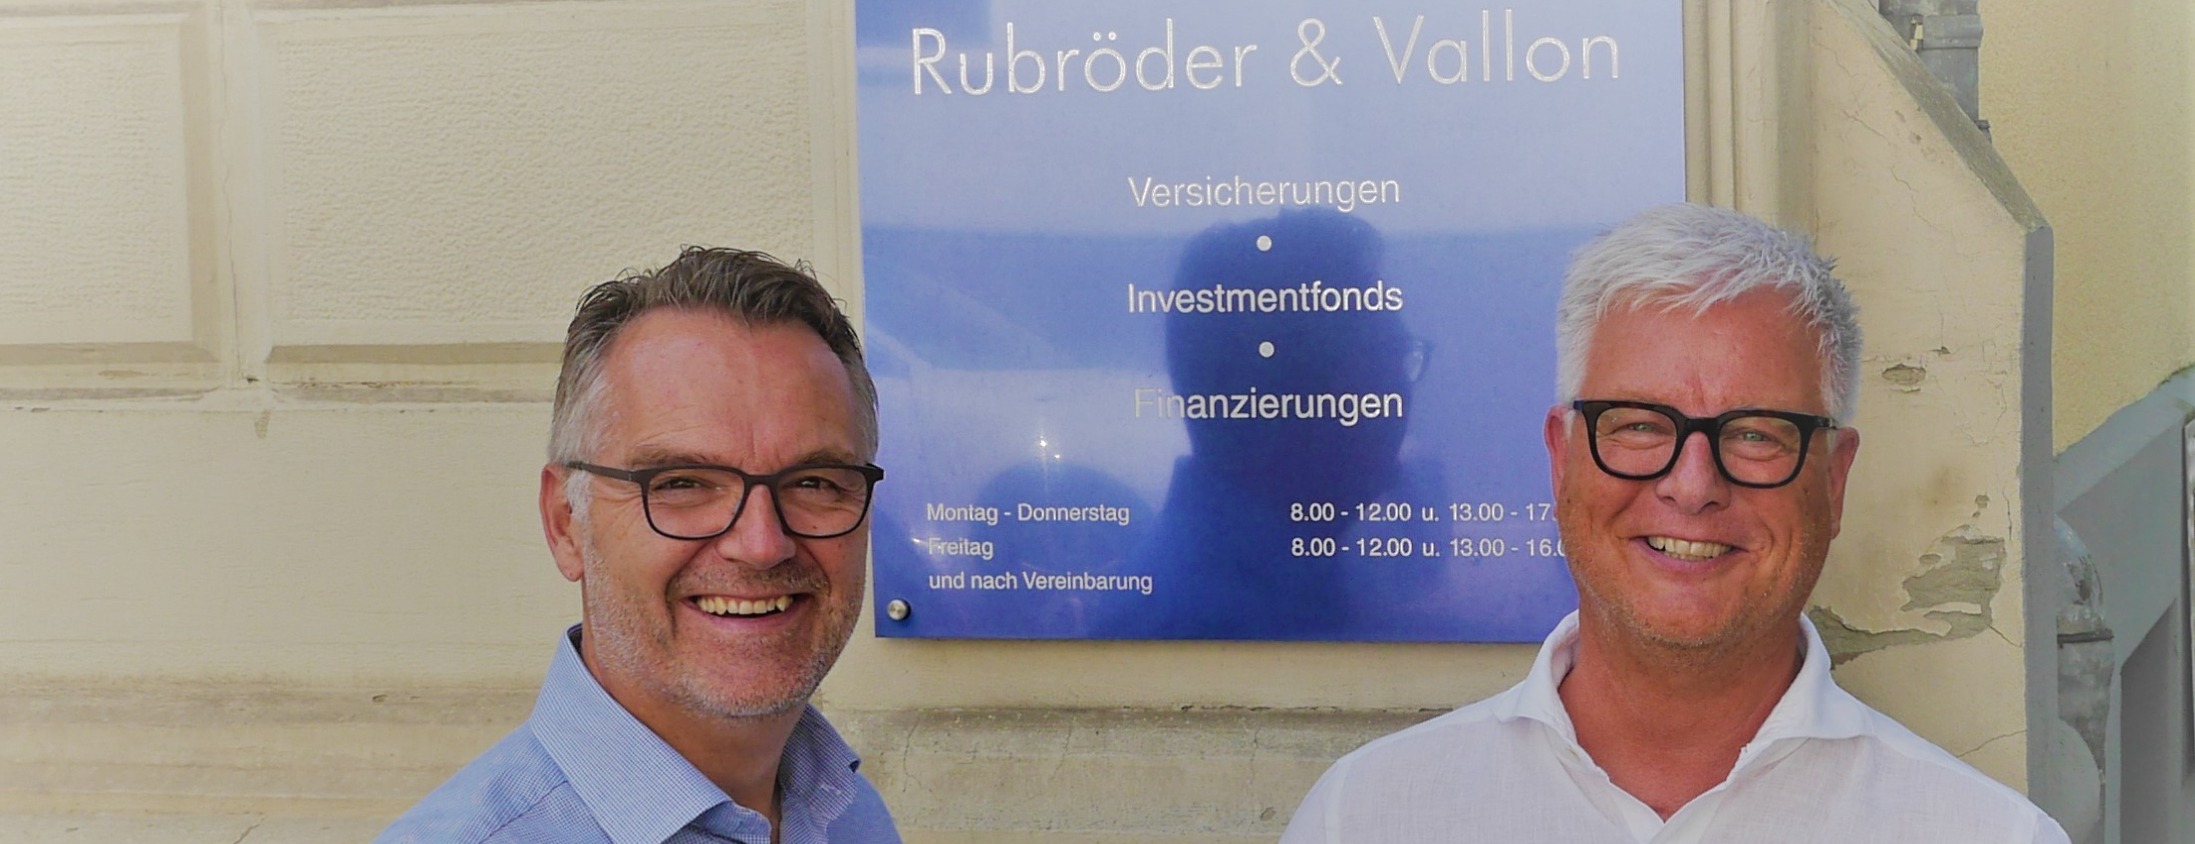 Allianz Versicherung Rubröder und Vallon Stuttgart - Autoversicherung Vergleich Baufinanzierung